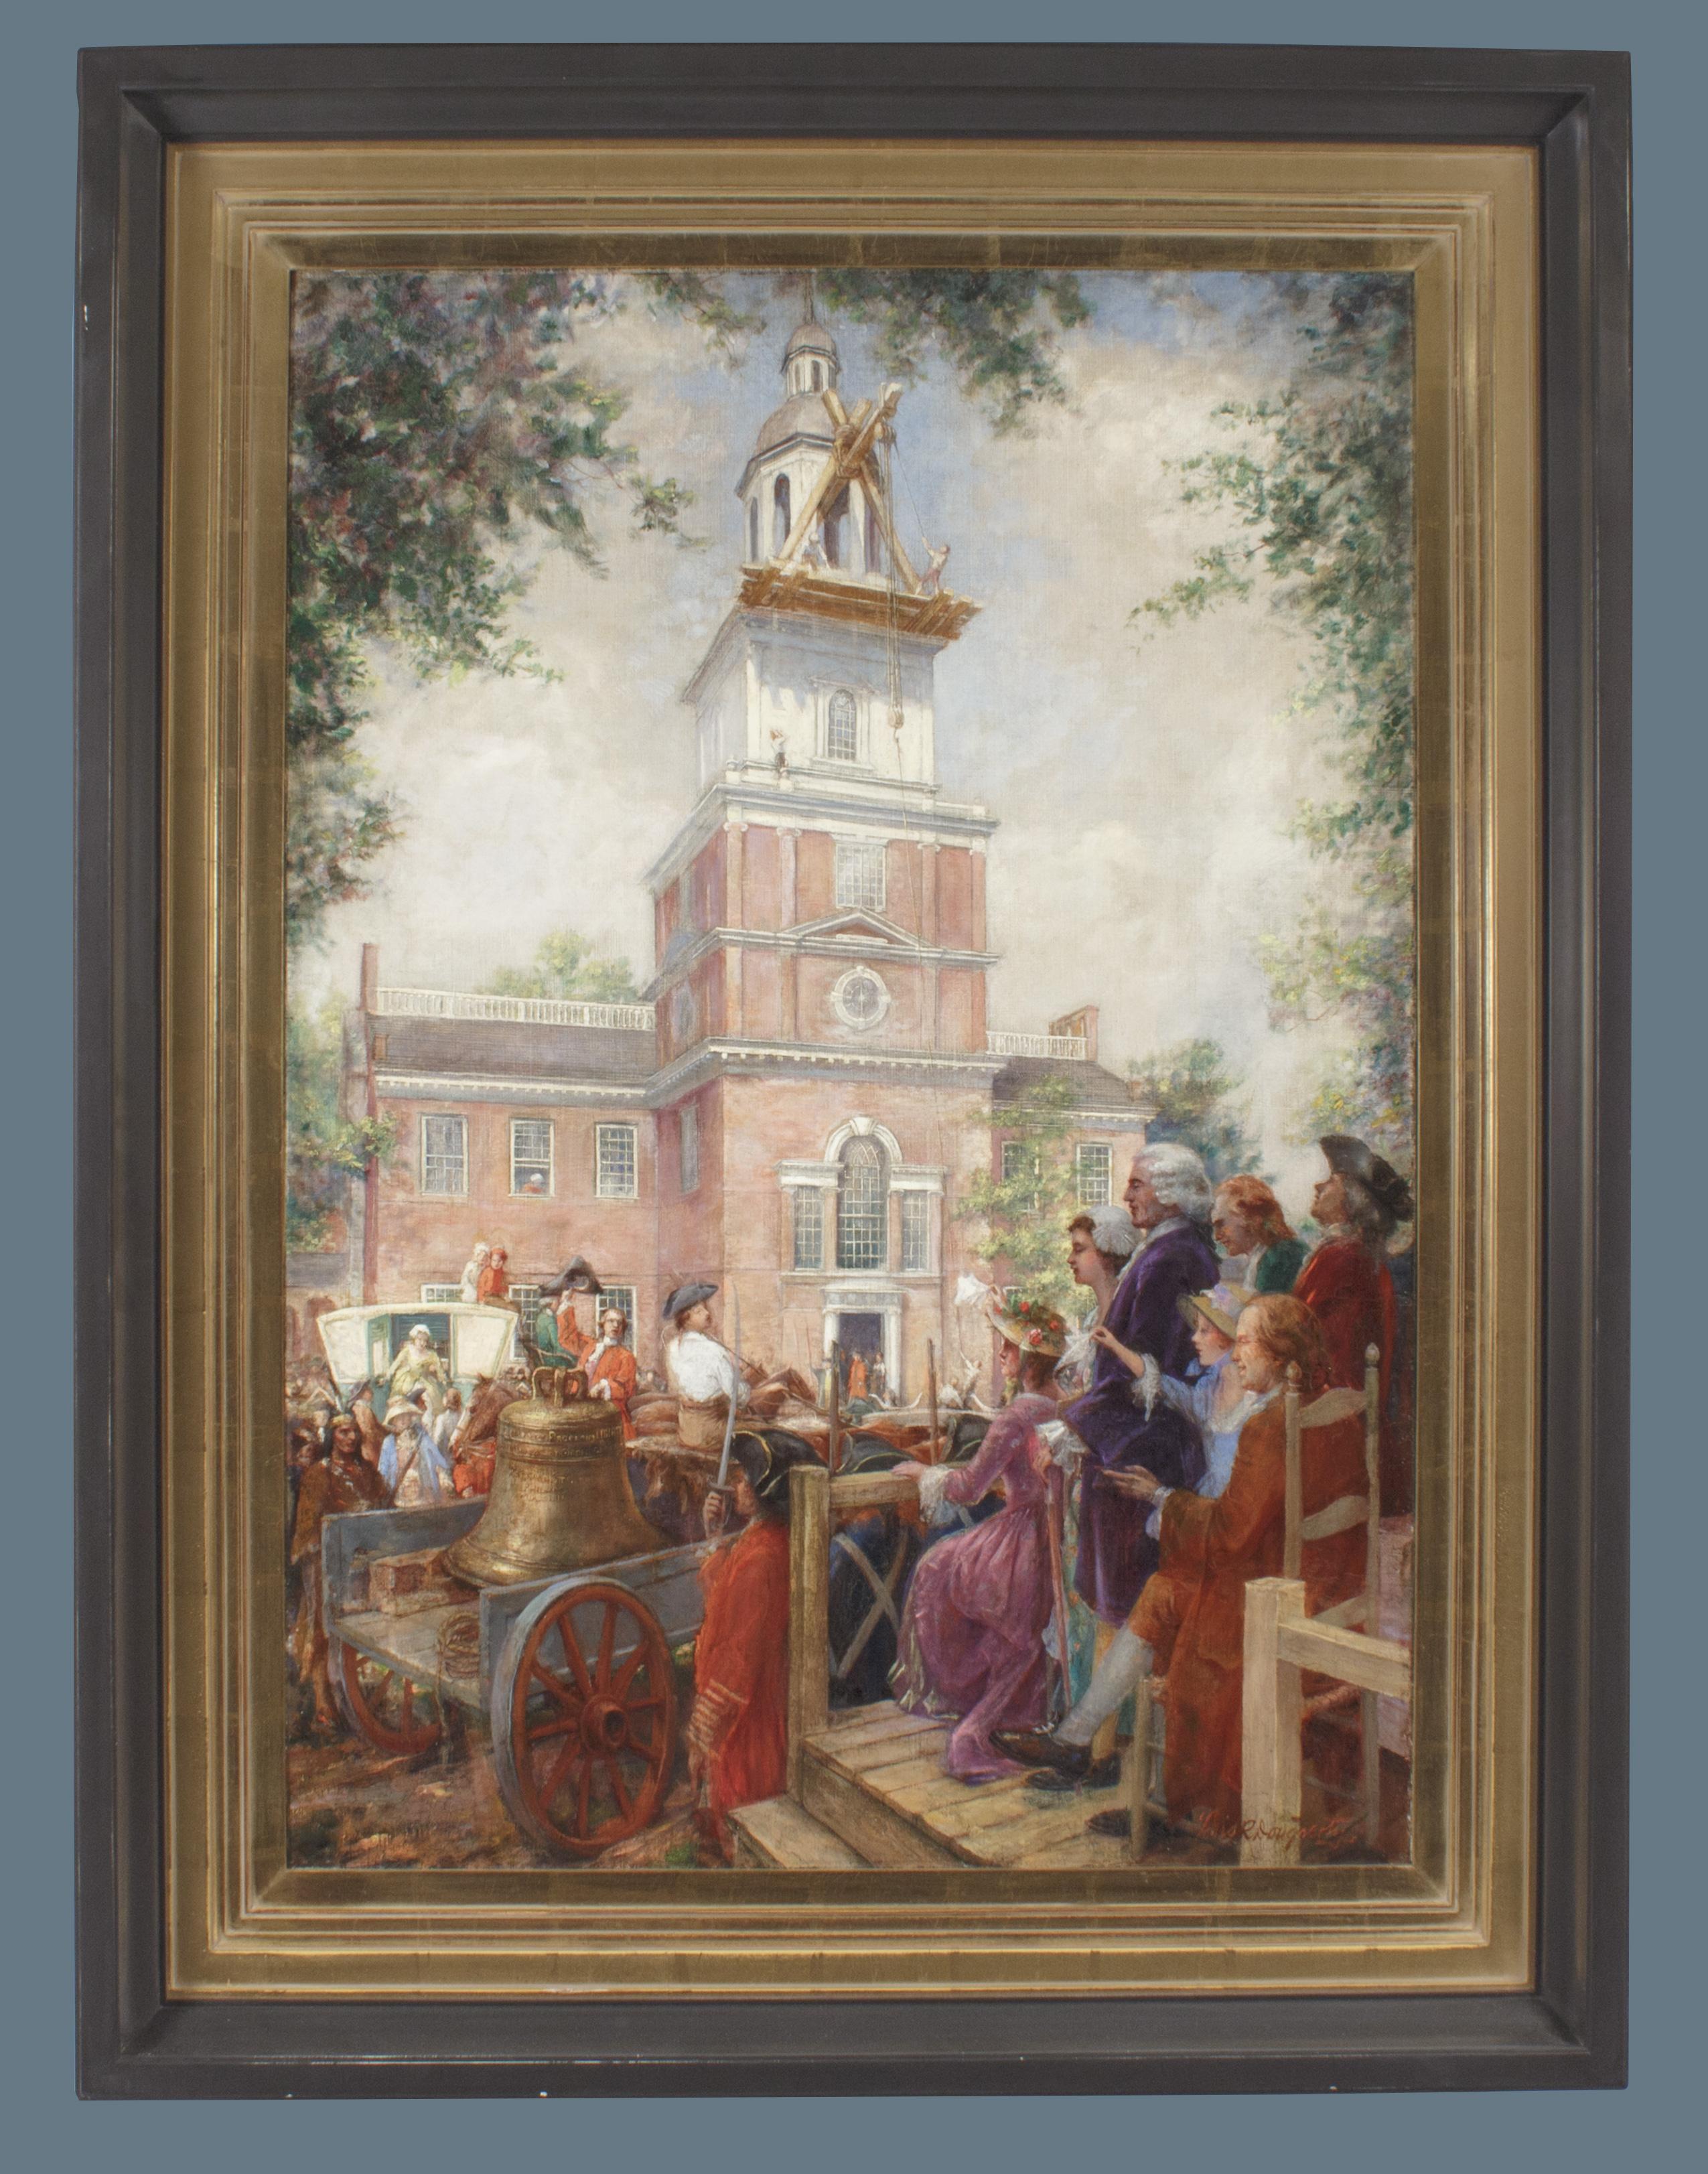 Installation de la cloche de la Liberté à l'Independence Hall, Philadelphie